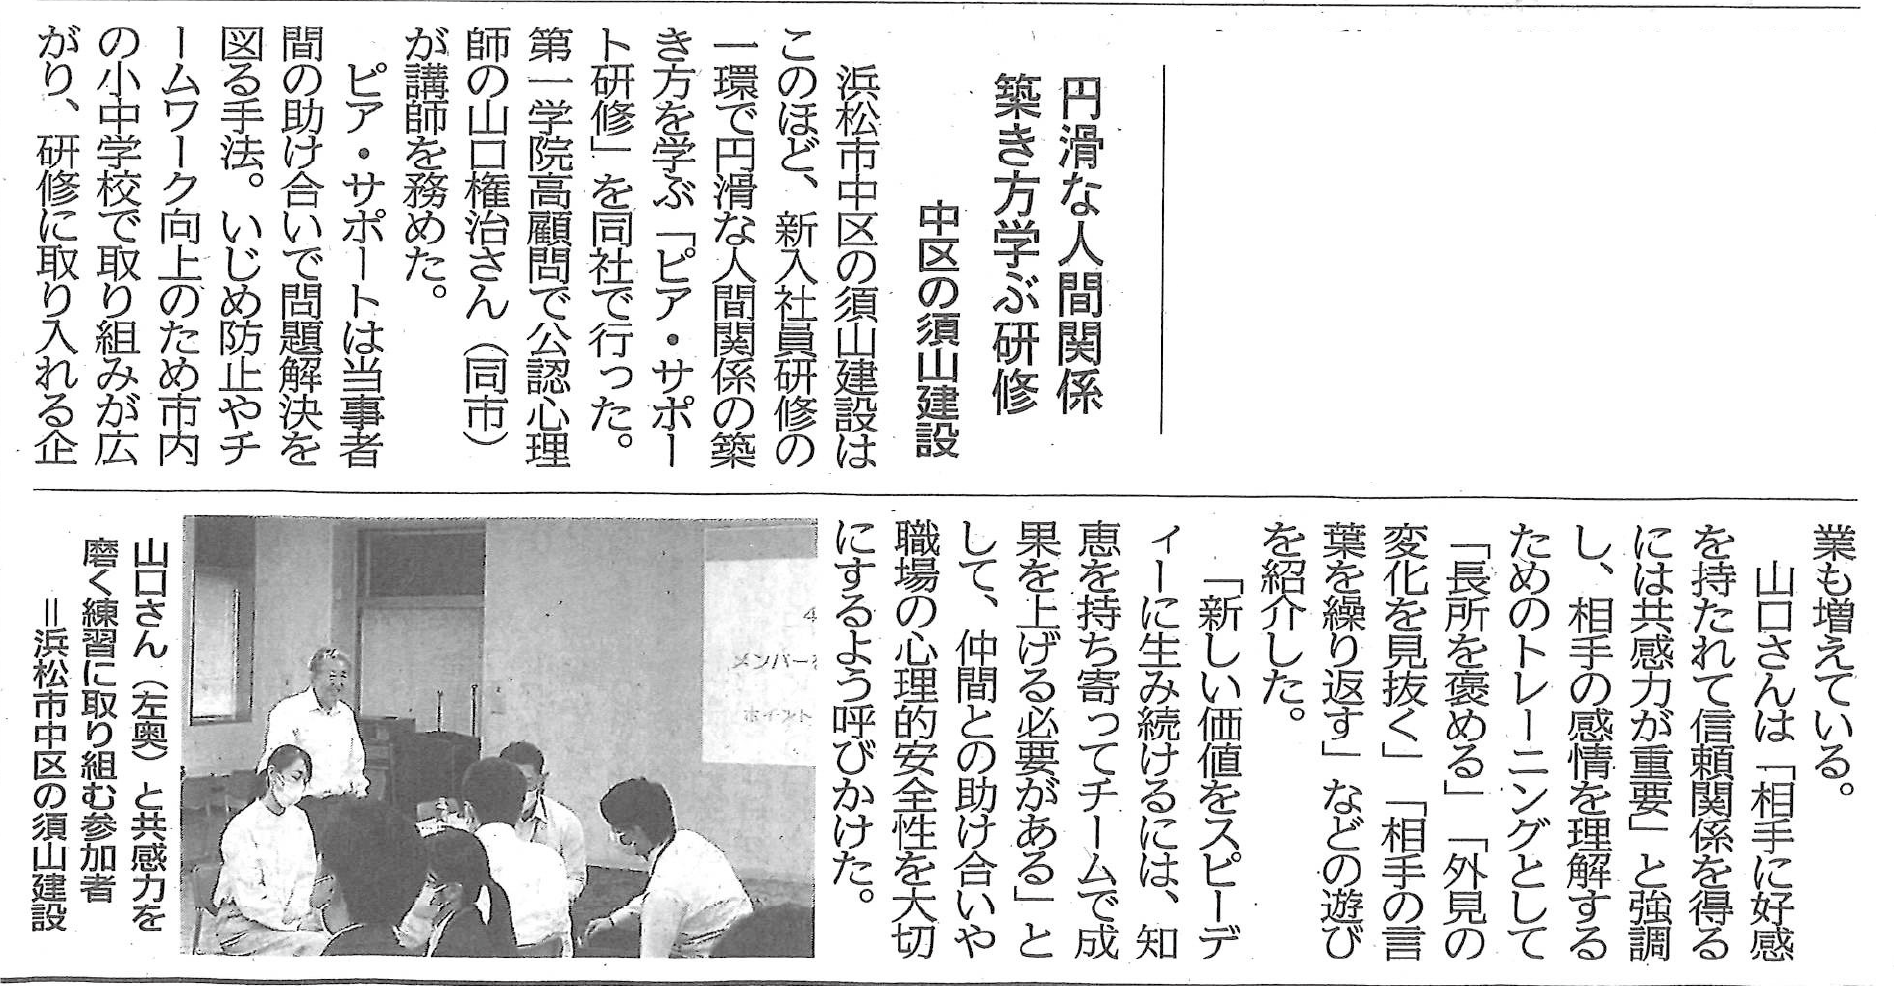 新入社員研修の様子が静岡新聞に掲載されました